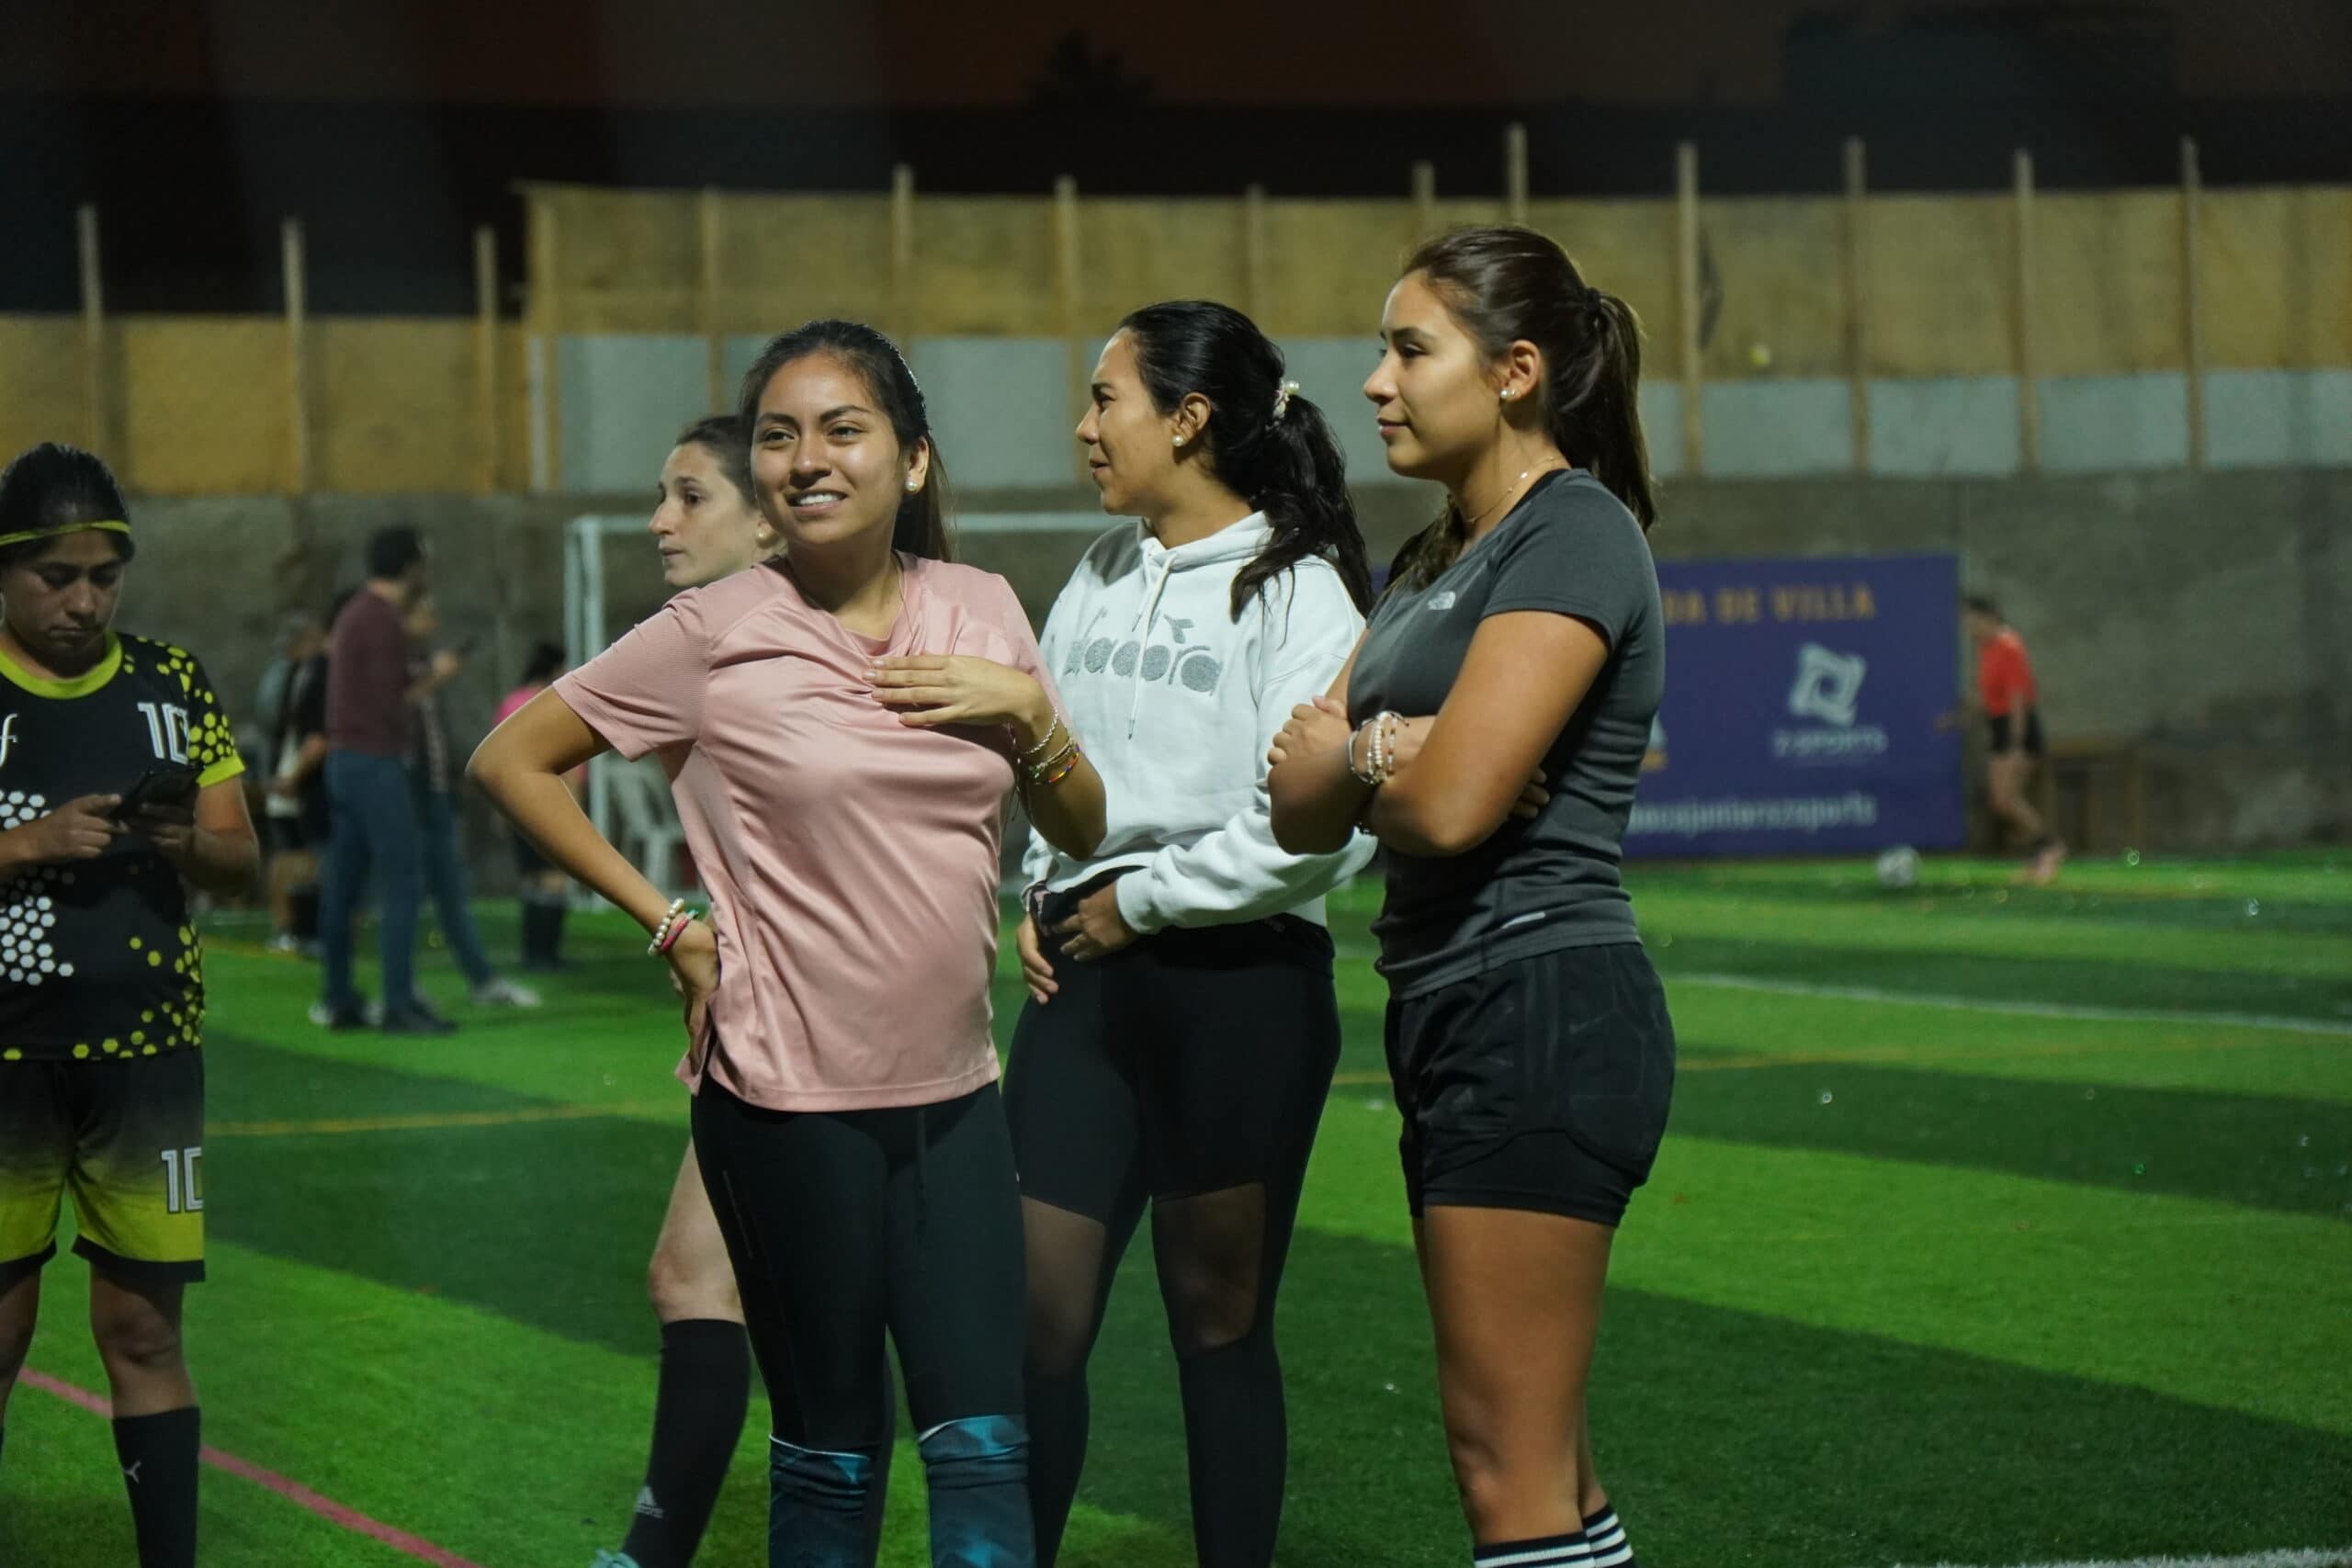 La Copa Ingram: Un evento que fusiona tecnología y deporte en Lima, Perú